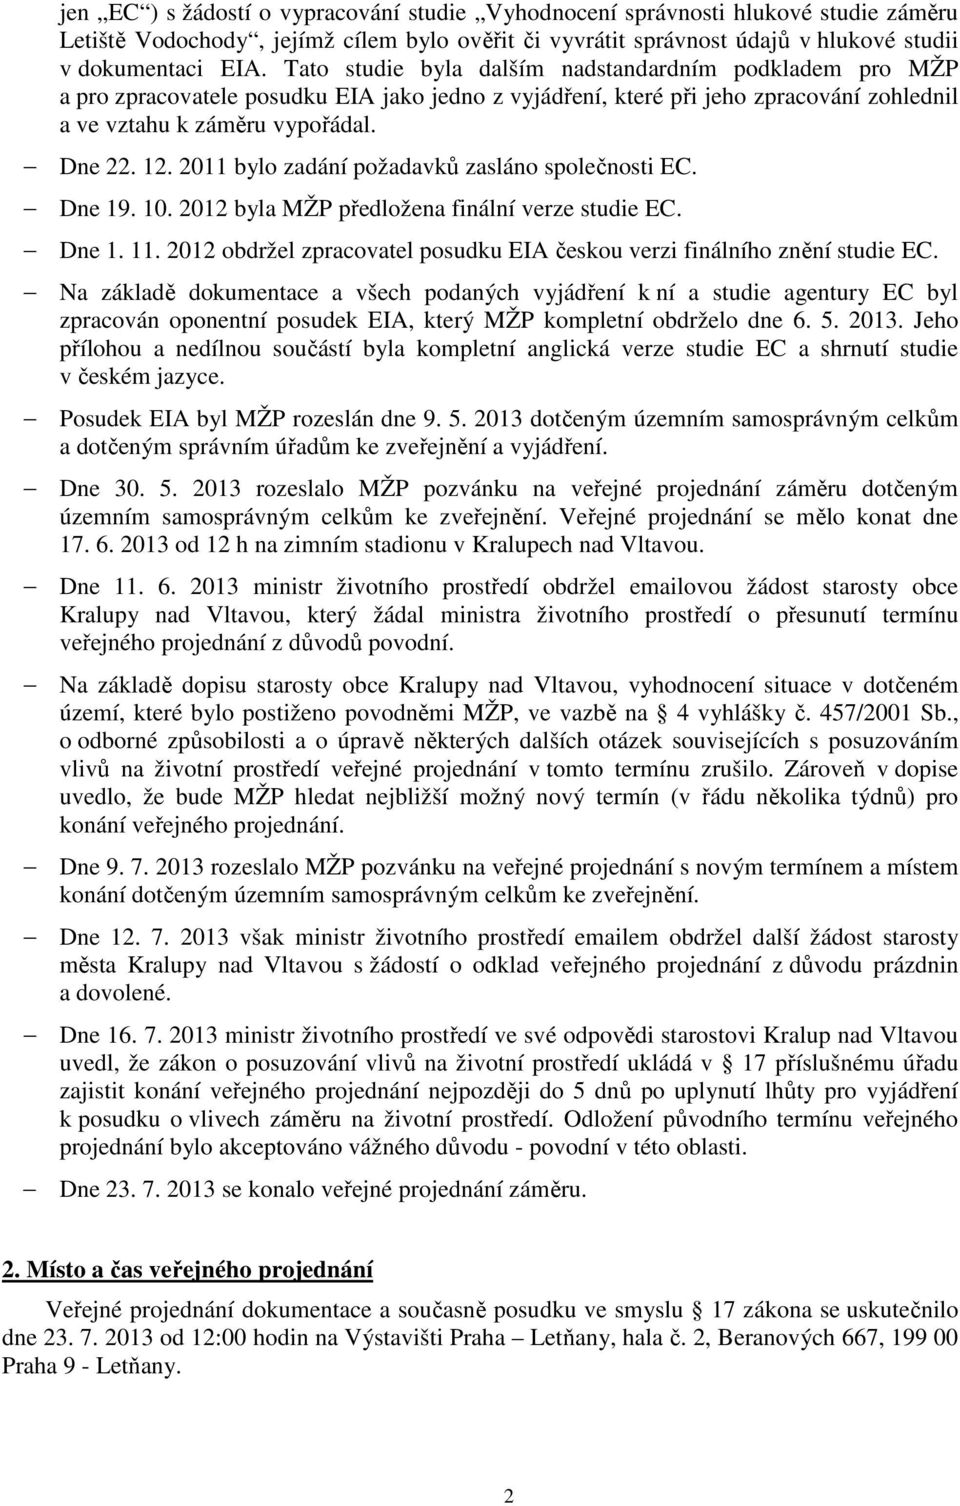 2011 bylo zadání požadavků zasláno společnosti EC. Dne 19. 10. 2012 byla MŽP předložena finální verze studie EC. Dne 1. 11. 2012 obdržel zpracovatel posudku EIA českou verzi finálního znění studie EC.